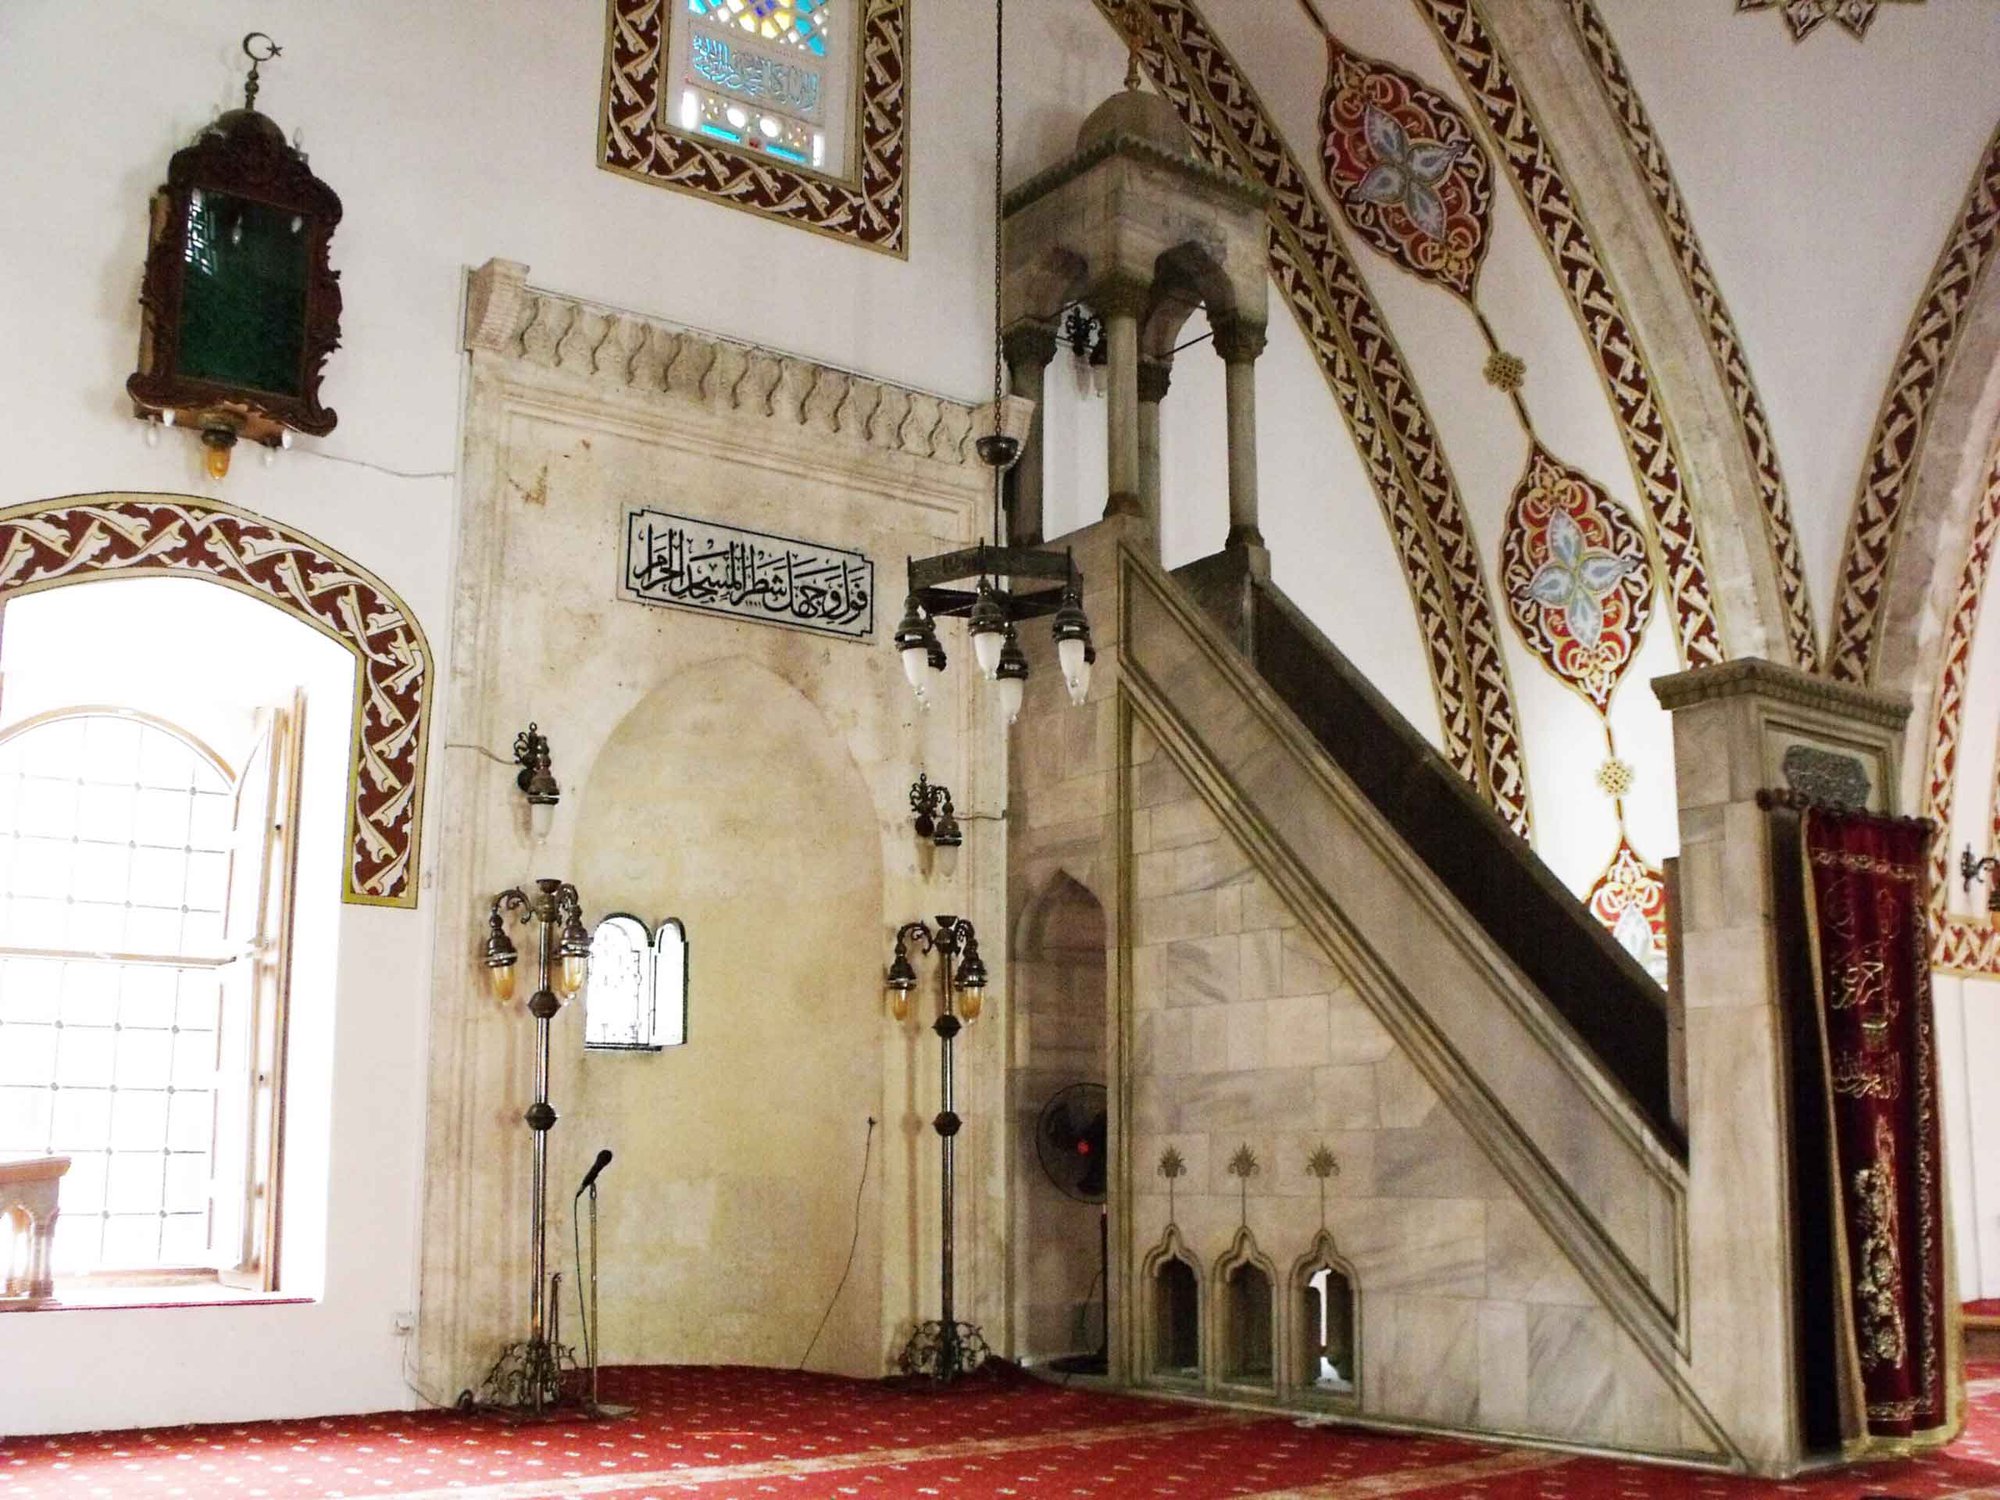 Khám phá nhà thờ Hồi giáo 1400 năm tuổi trước khi bị tàn phá bởi thảm họa động đất tại Thổ Nhĩ Kỳ  - Ảnh 2.